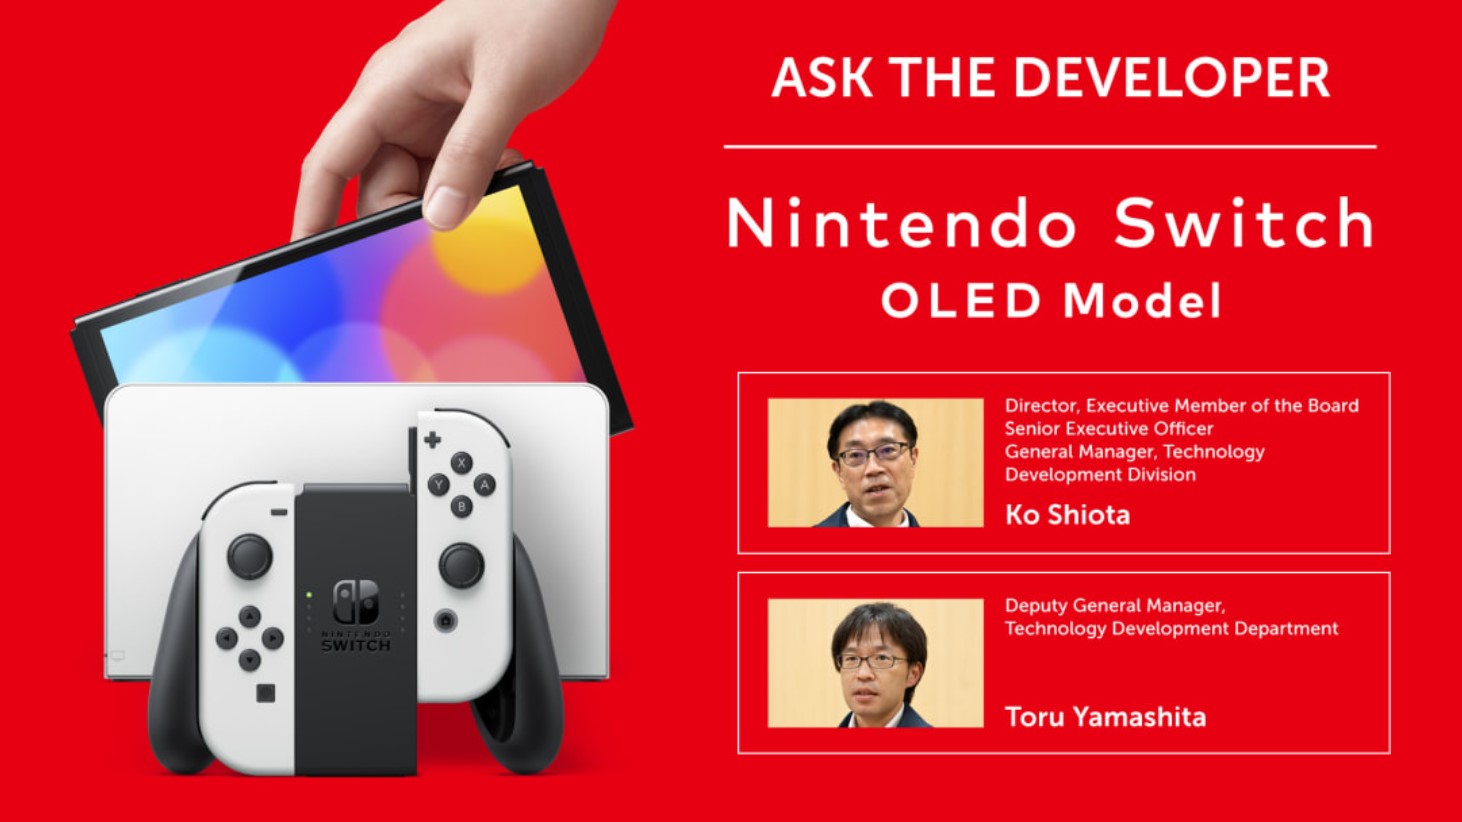 任天堂技术开发部总经理盐田兴和副总经理山下透，一同解答玩家对Switch OLED的疑问。